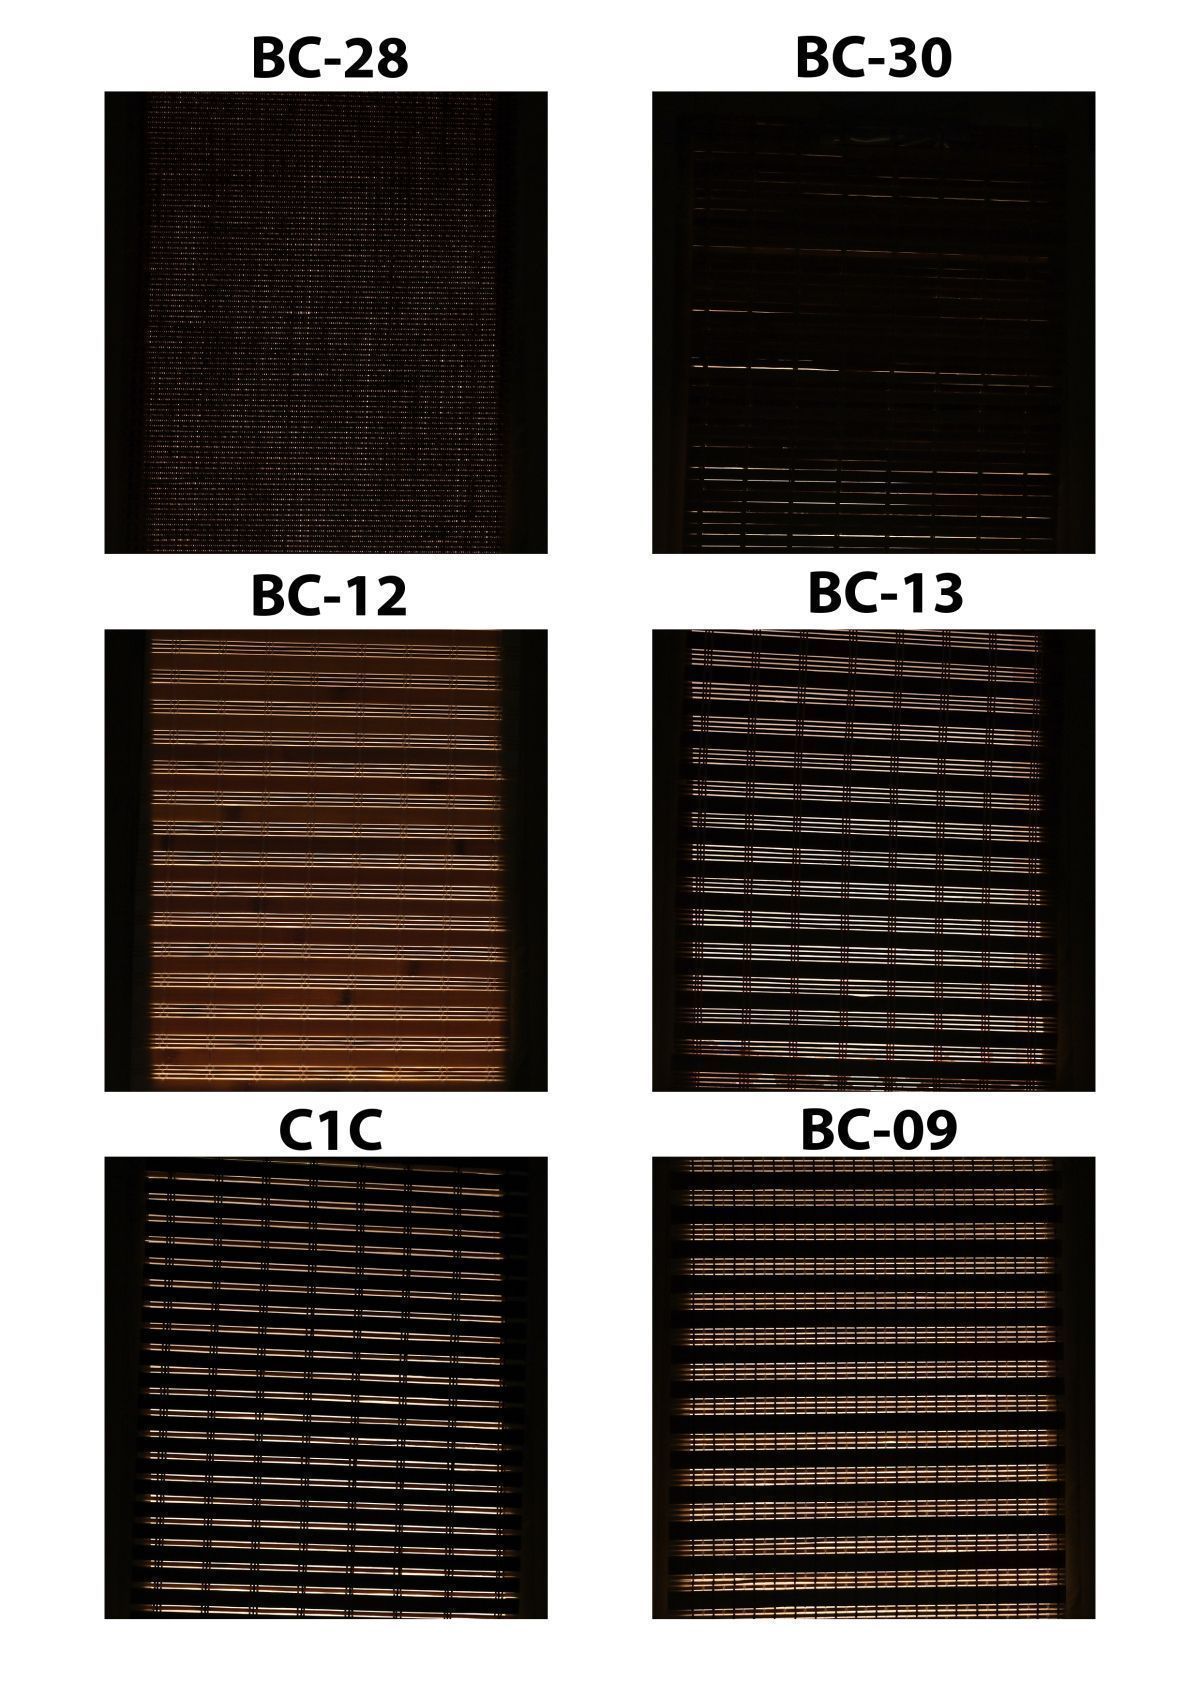 Bambuko žaliuzių medžiagos pasižymi skirtingomis šviesos blokavimo savybėmis. BC-28 ir BC-30 yra geriausios.